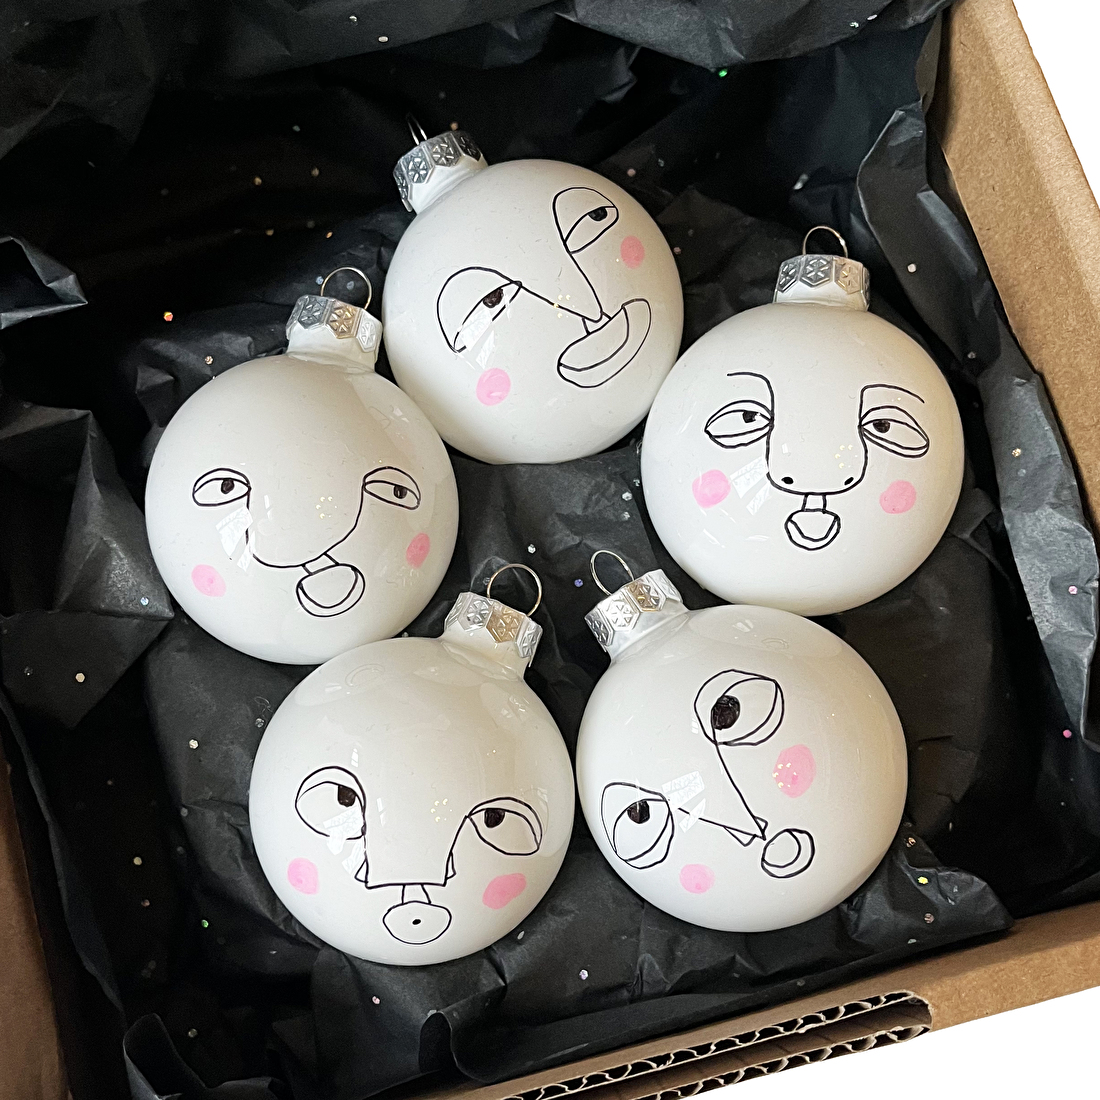 Fortune kerstballen, een origineel kerstpakket